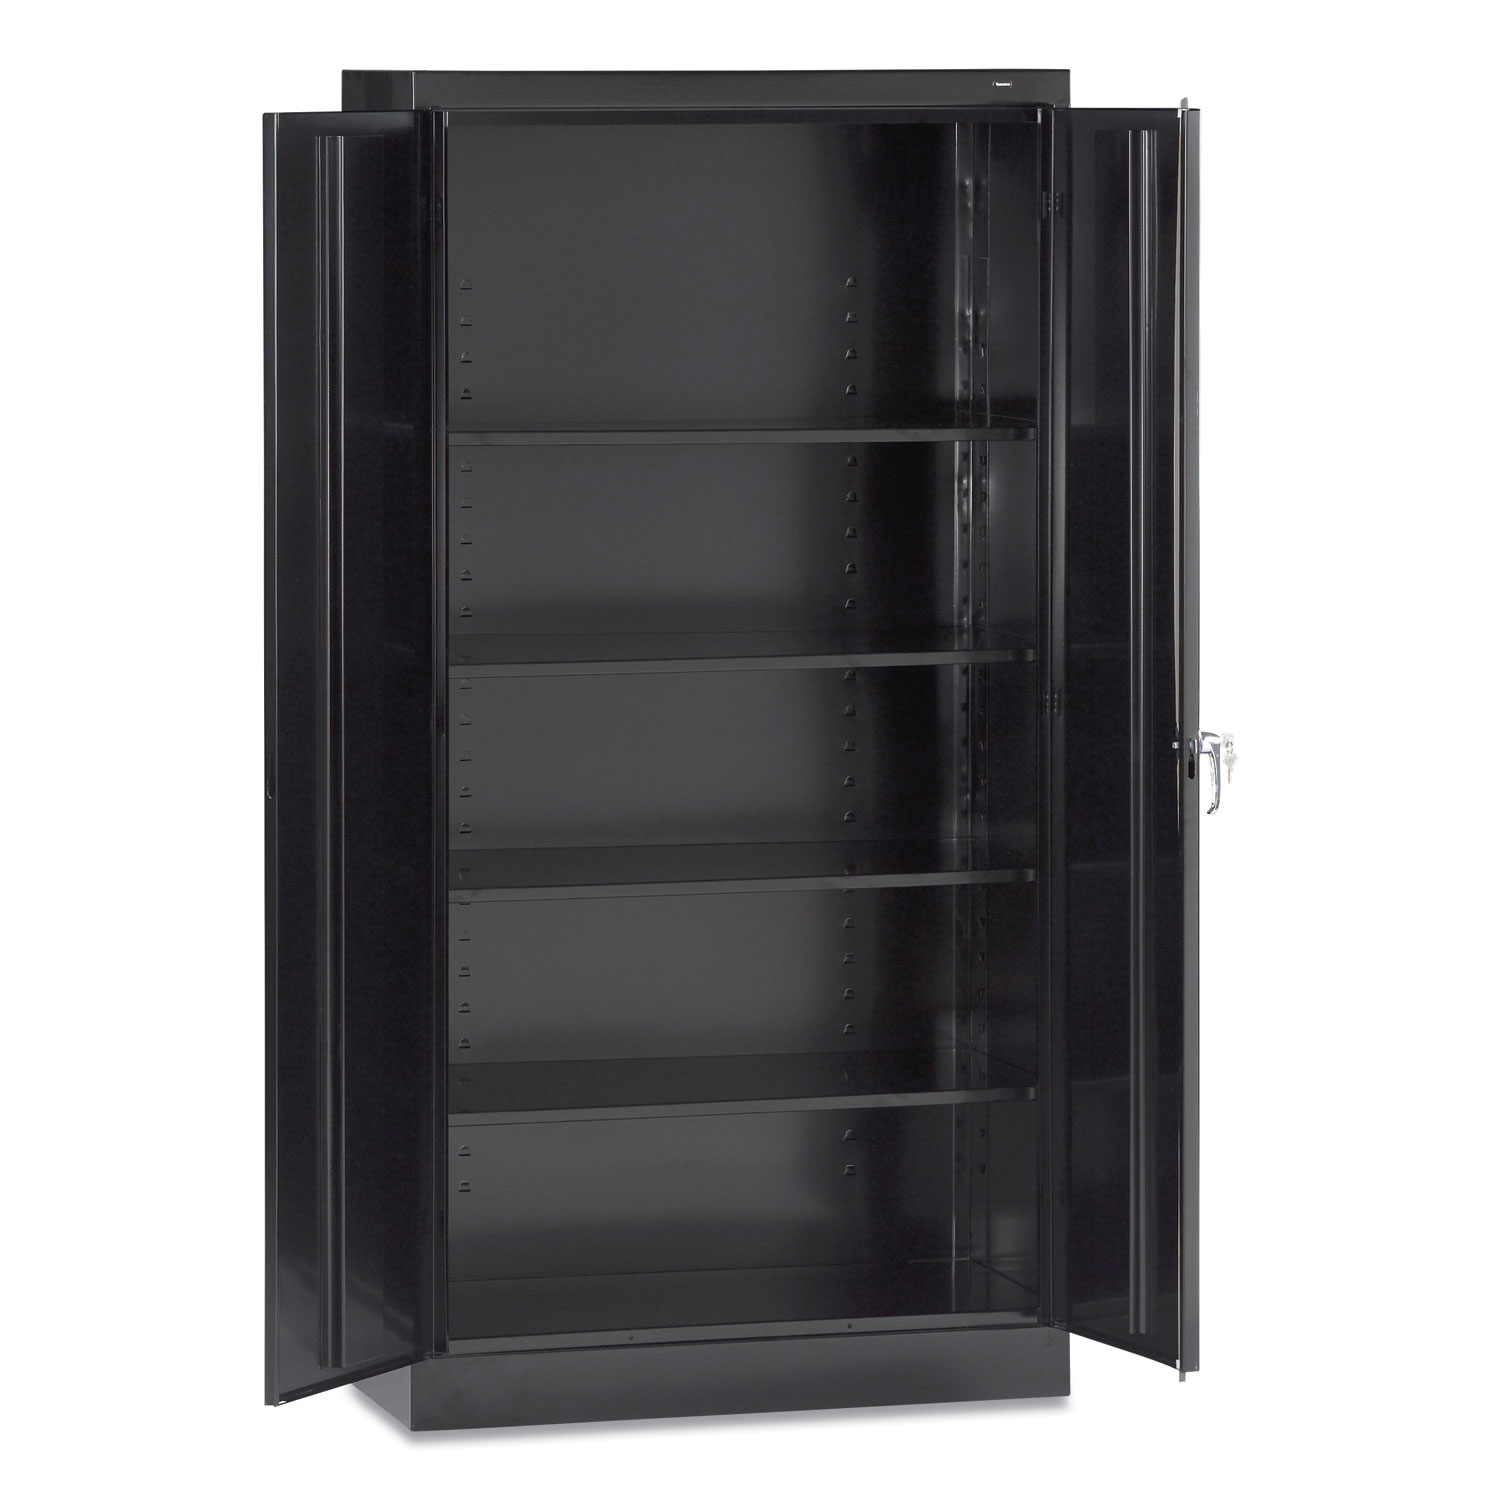 Tennsco 72 High Standard Cabinet (Assembled), 36 x 18 x 72, Black